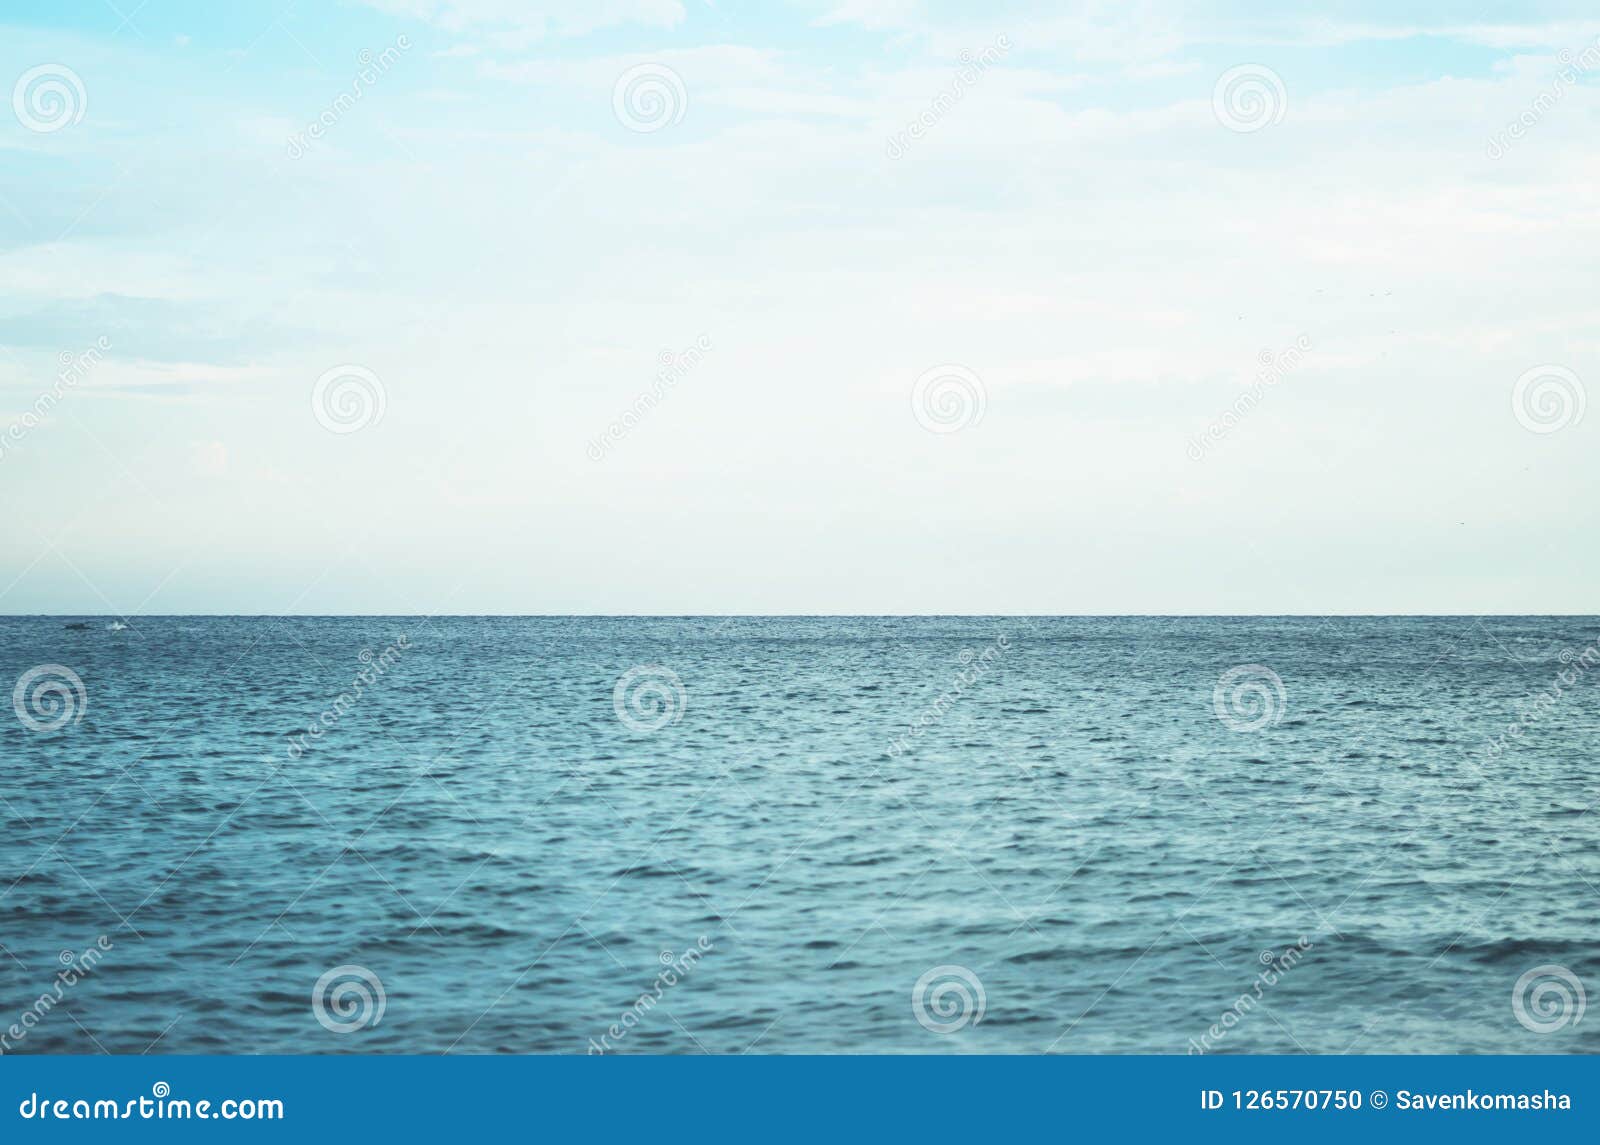 蓝色安静的海洋海岸风景波浪背景海scape和沙子海滩海岸线全景天际透视图自然库存照片 图片包括有